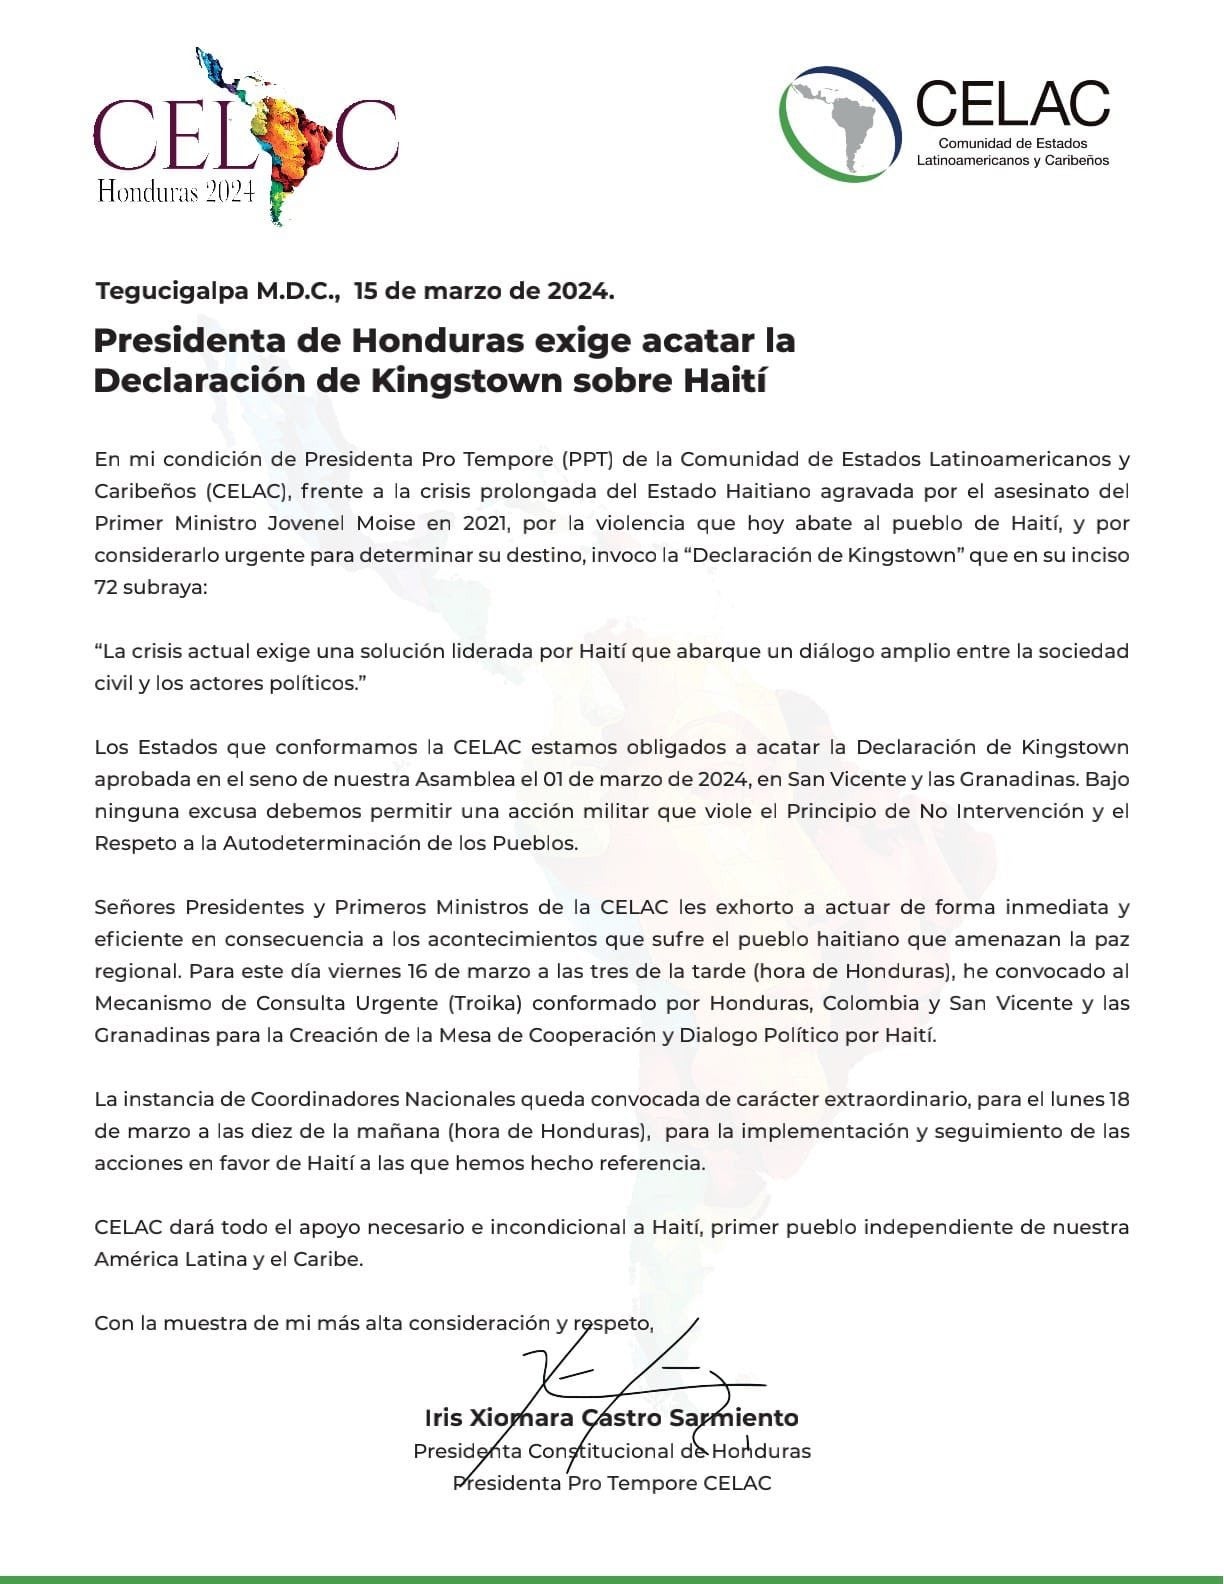 Presidenta Castro exige acatar la “Declaración de Kingstown” sobre Haití